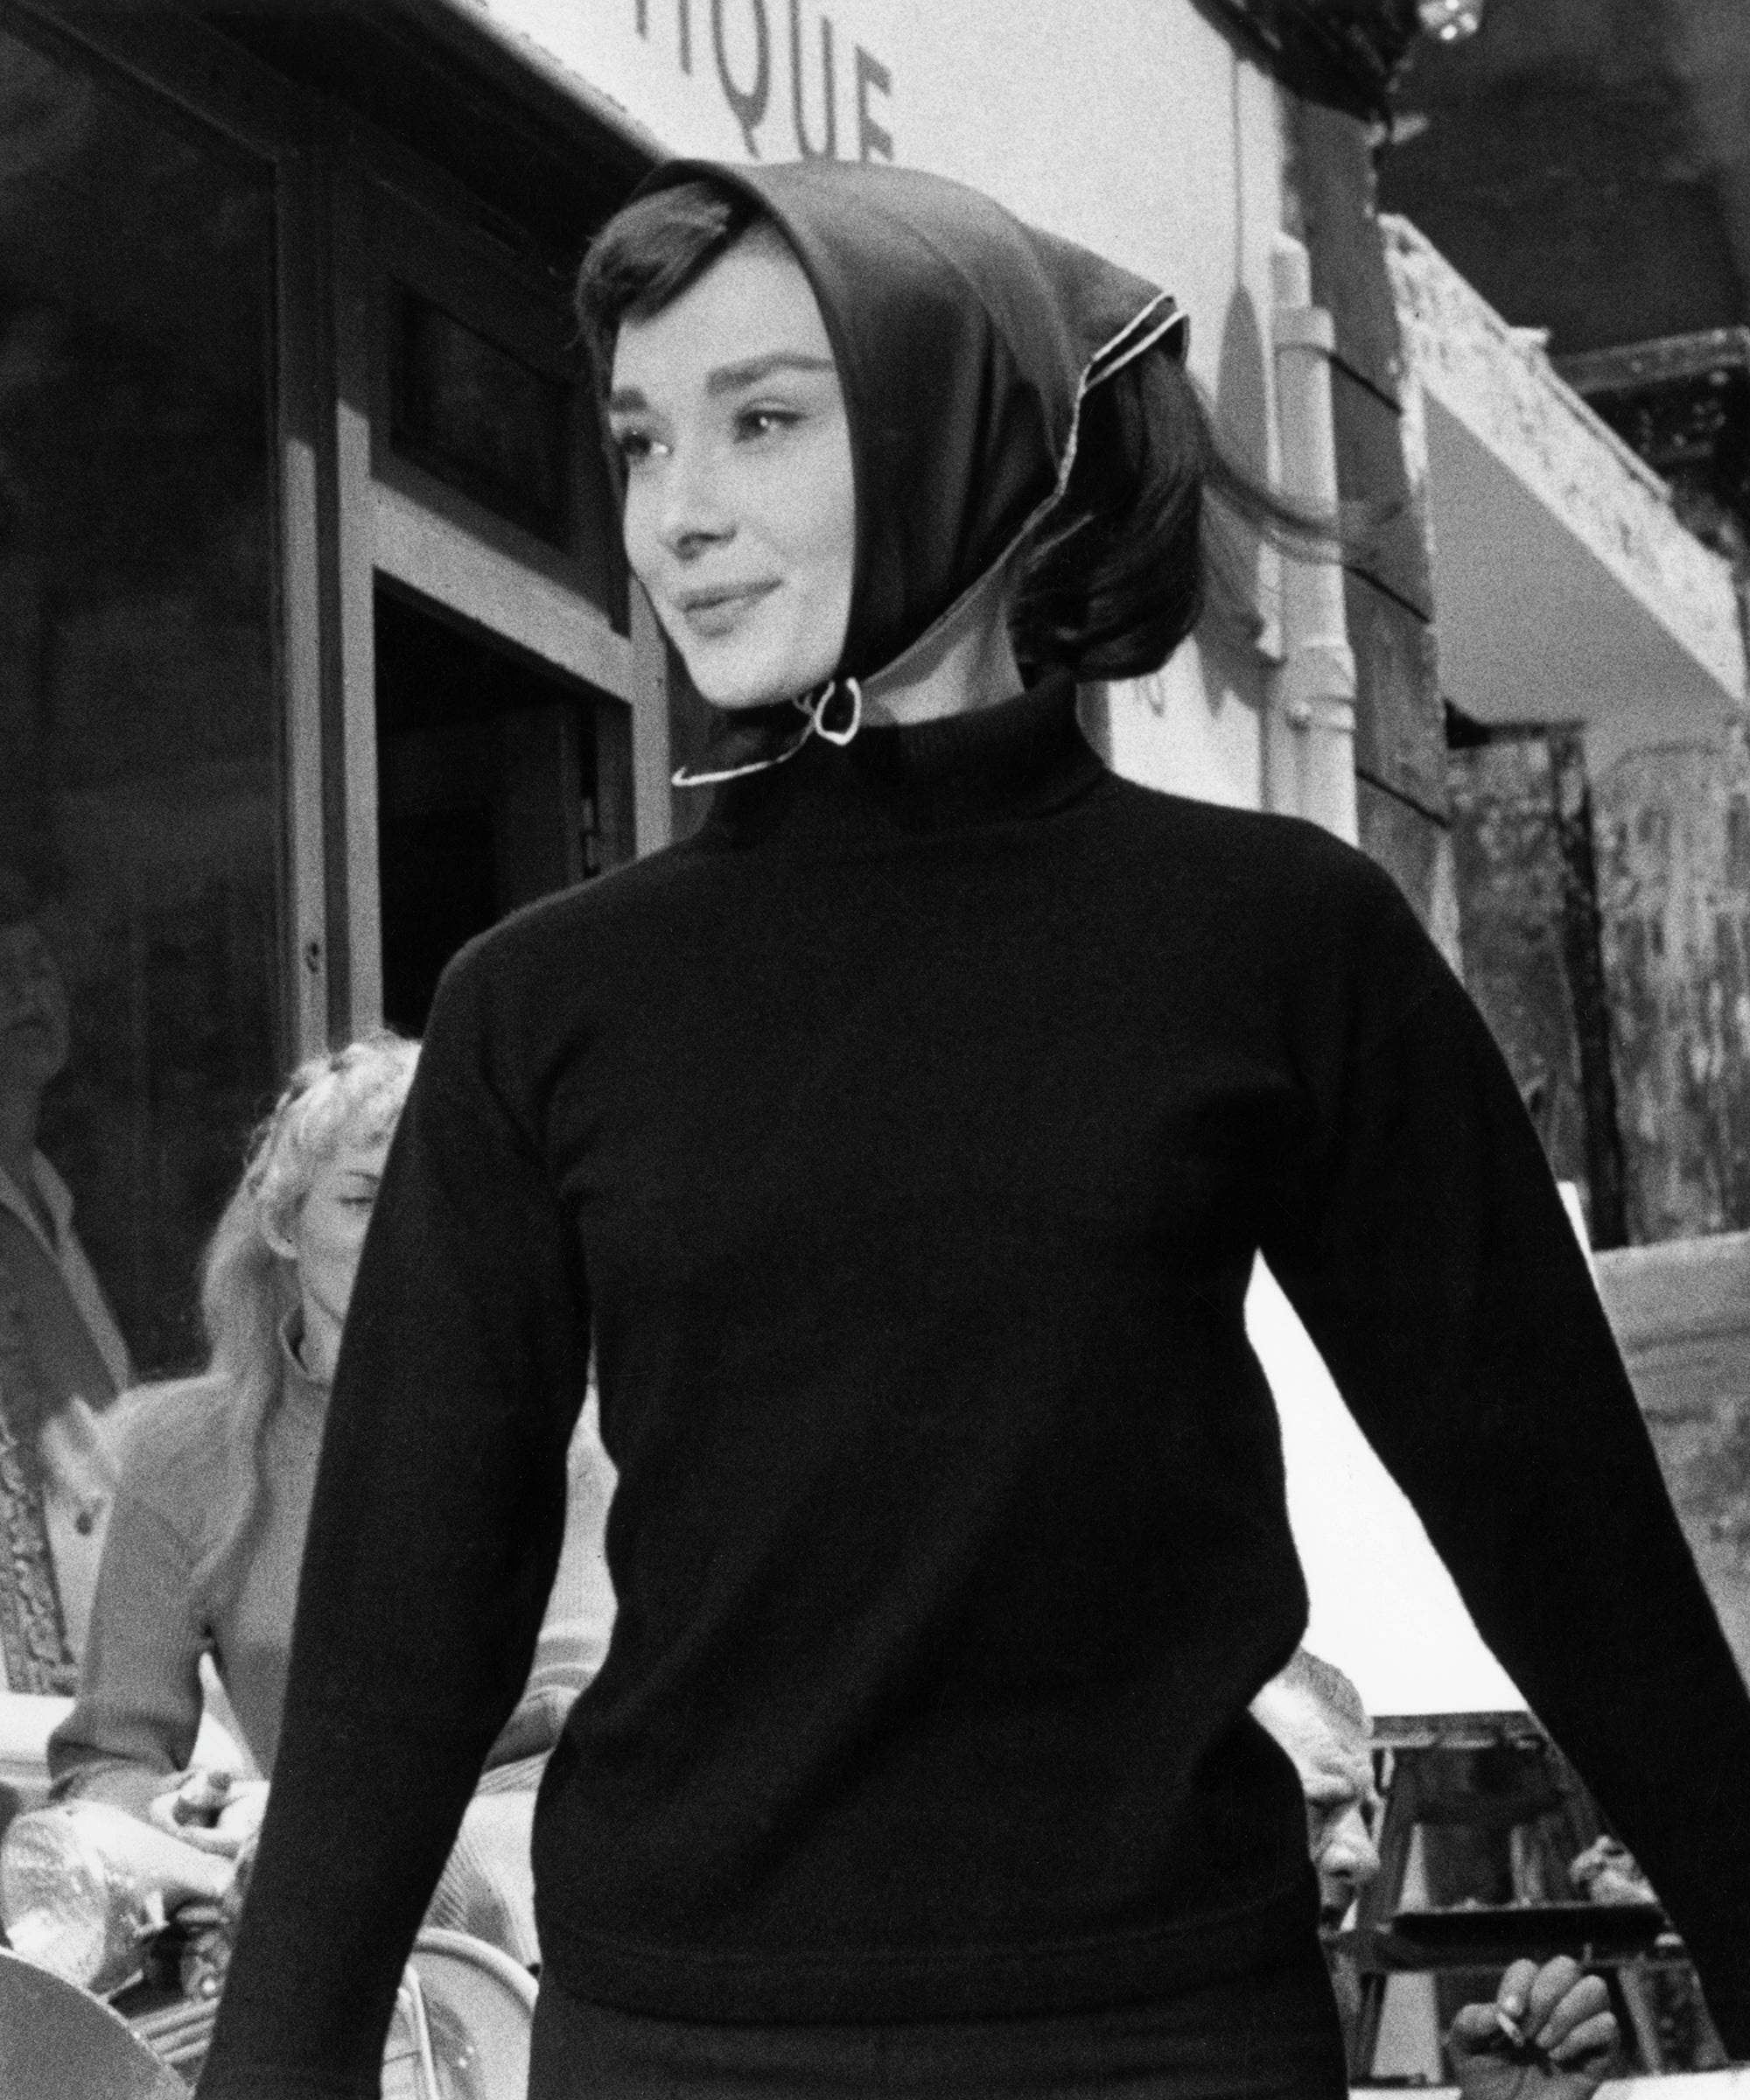 Audrey Hepburn Iconic Hair & Makeup Looks For Halloween